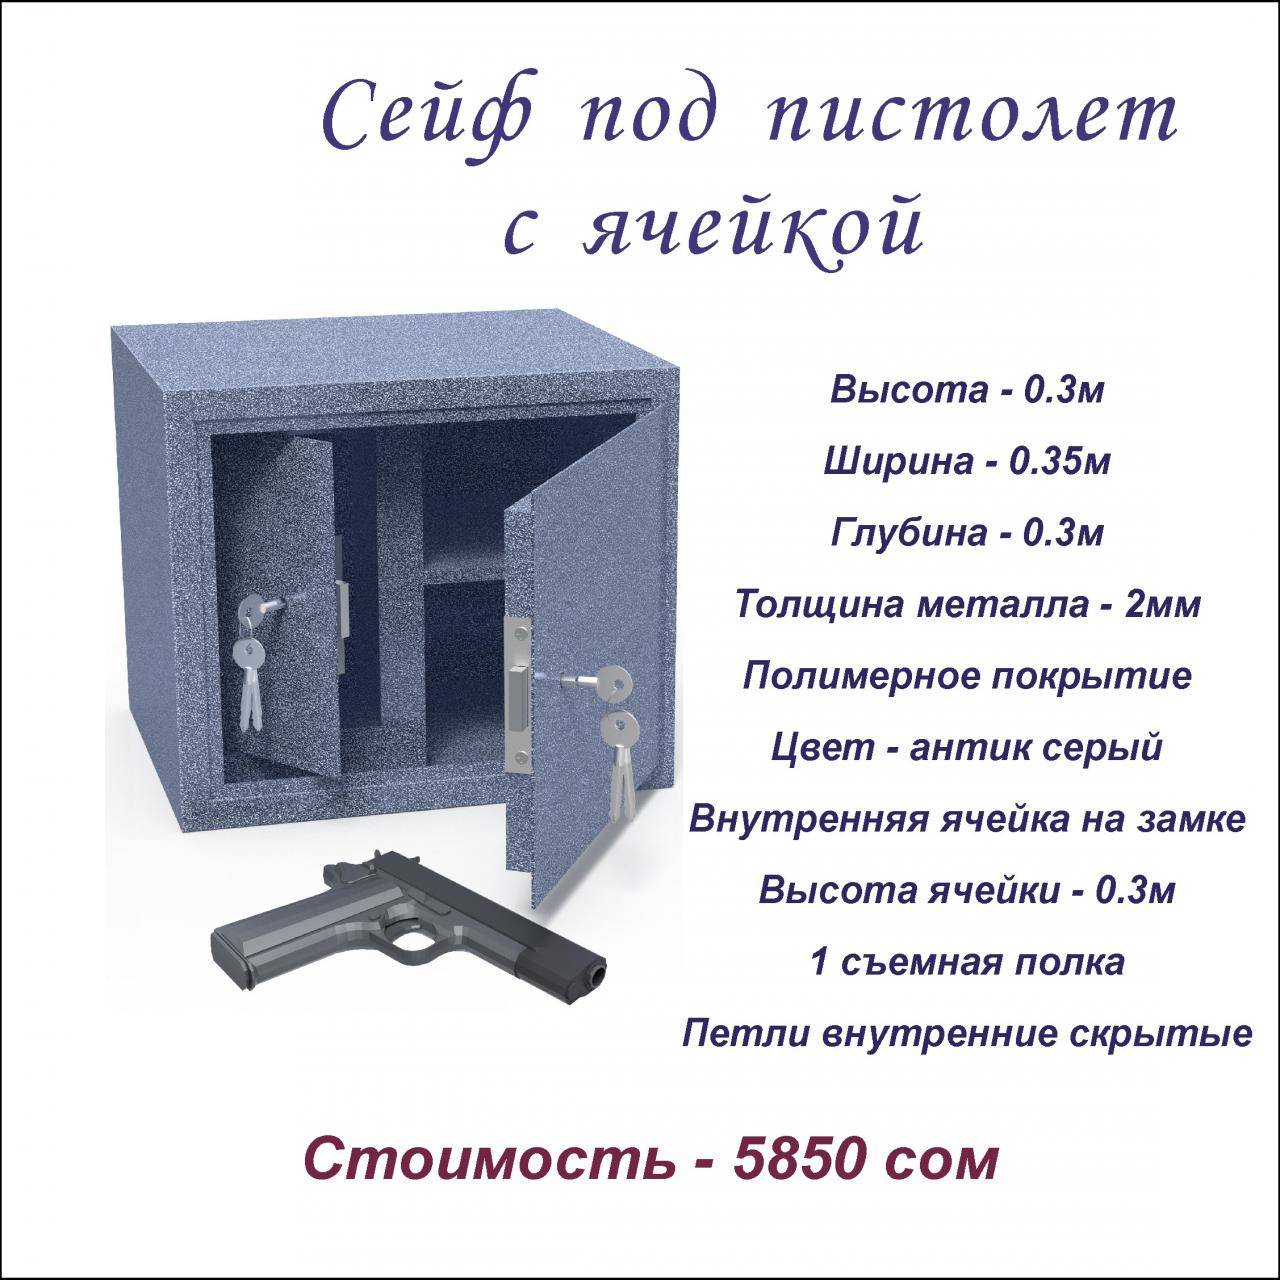 Гост р 56367-2015: сейфы и металлические шкафы для хранения гражданского оружия и патронов. общие технические условия